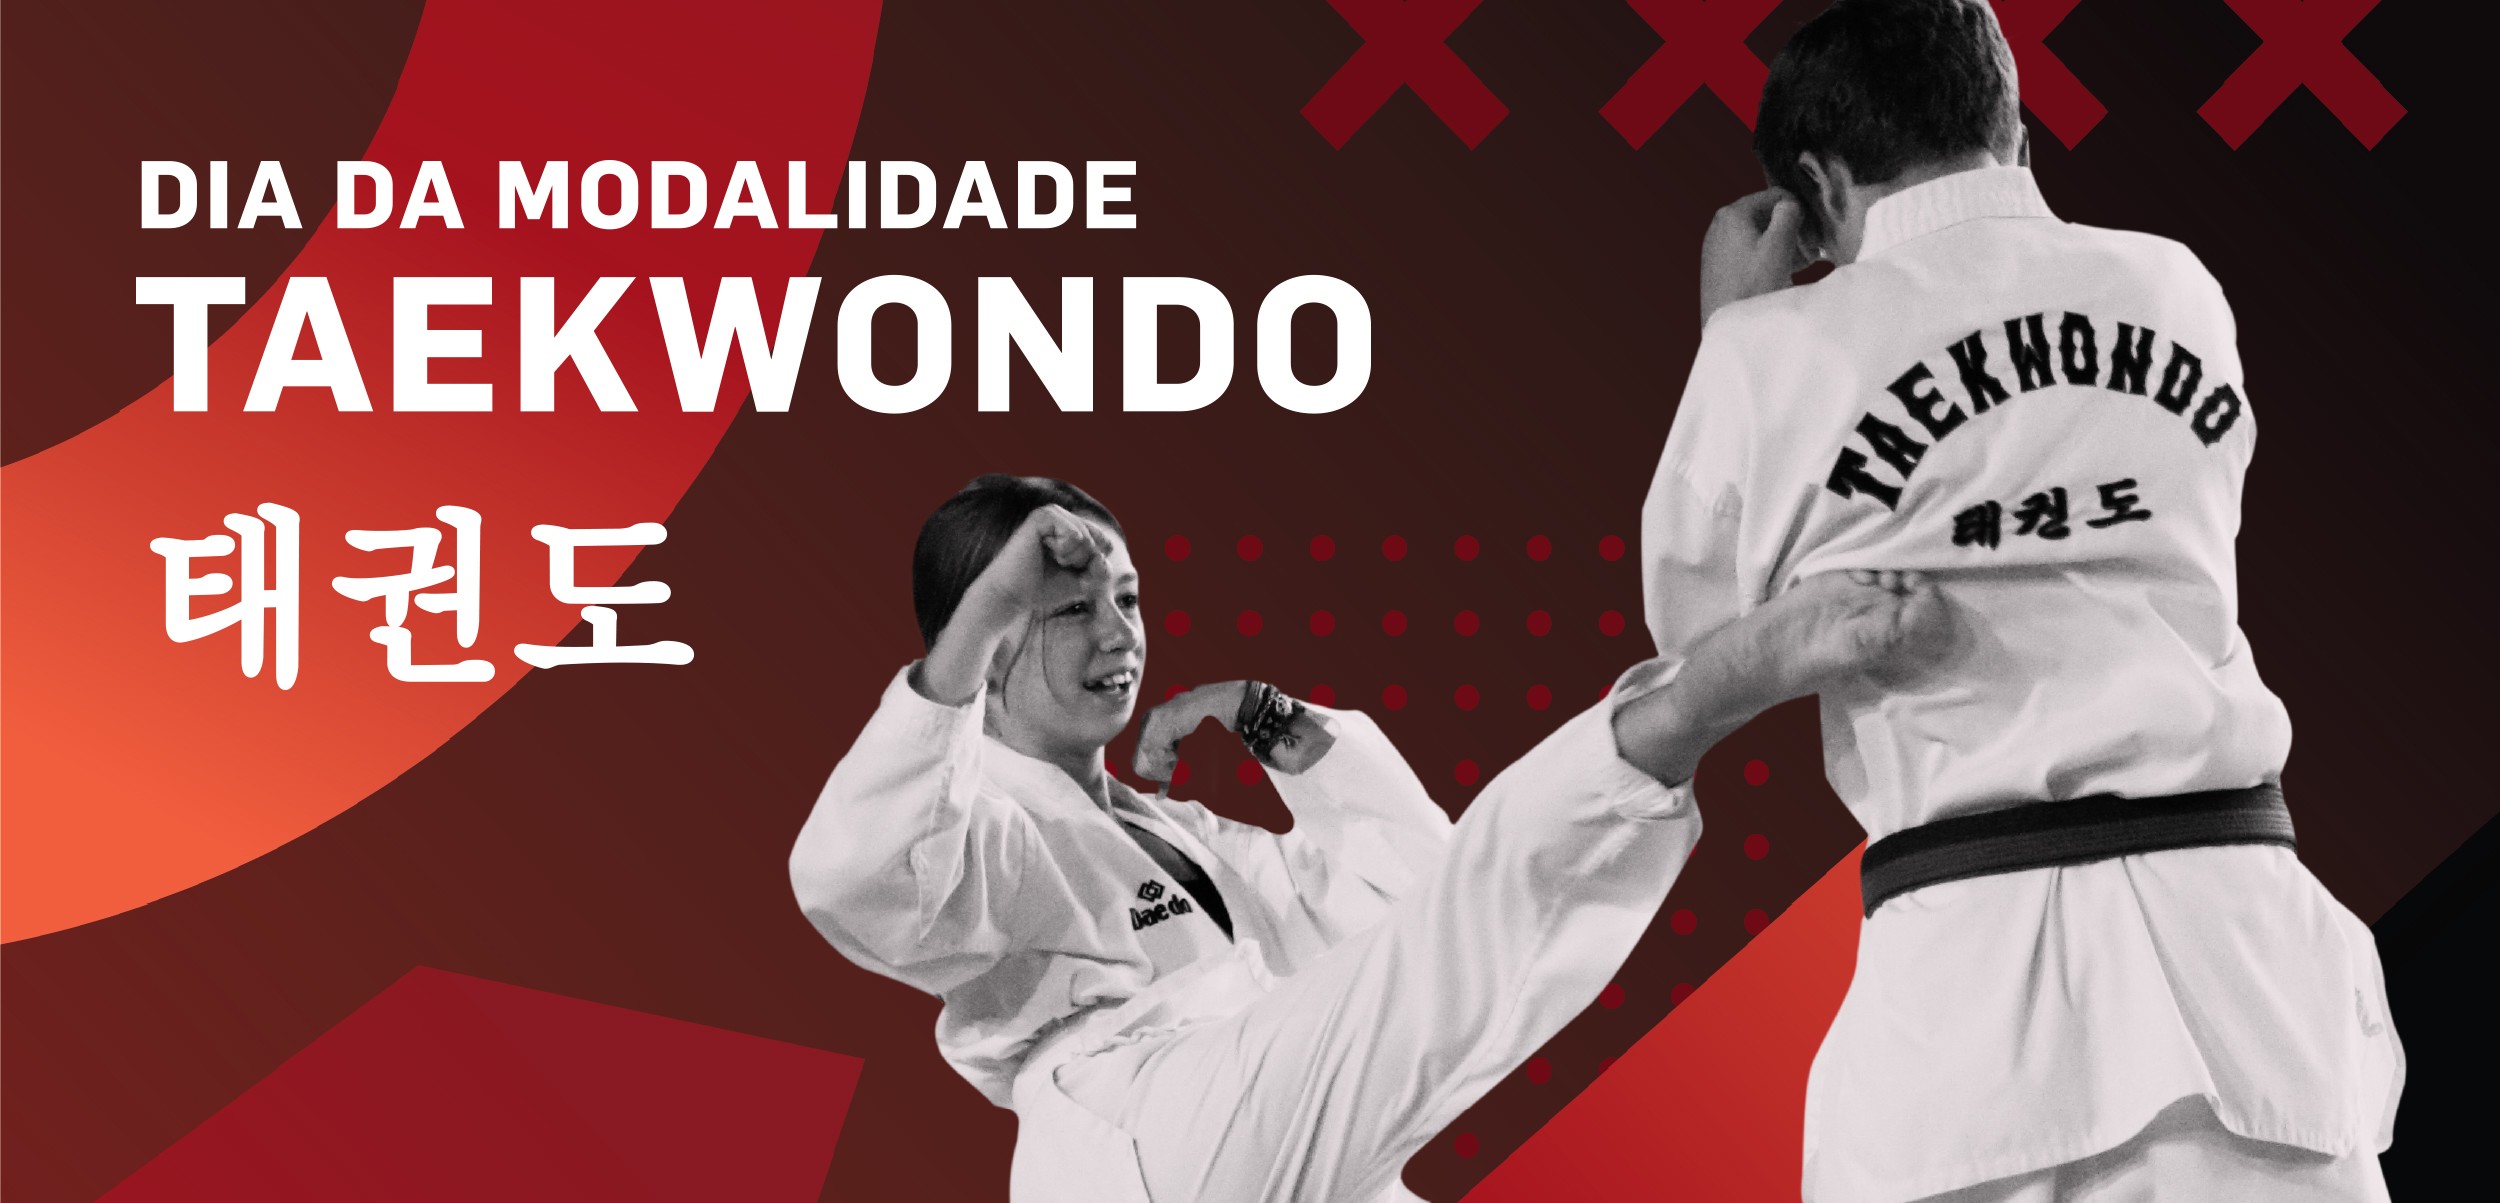 Vila Franca de Xira promove o Taekwondo no Dia da Modalidade